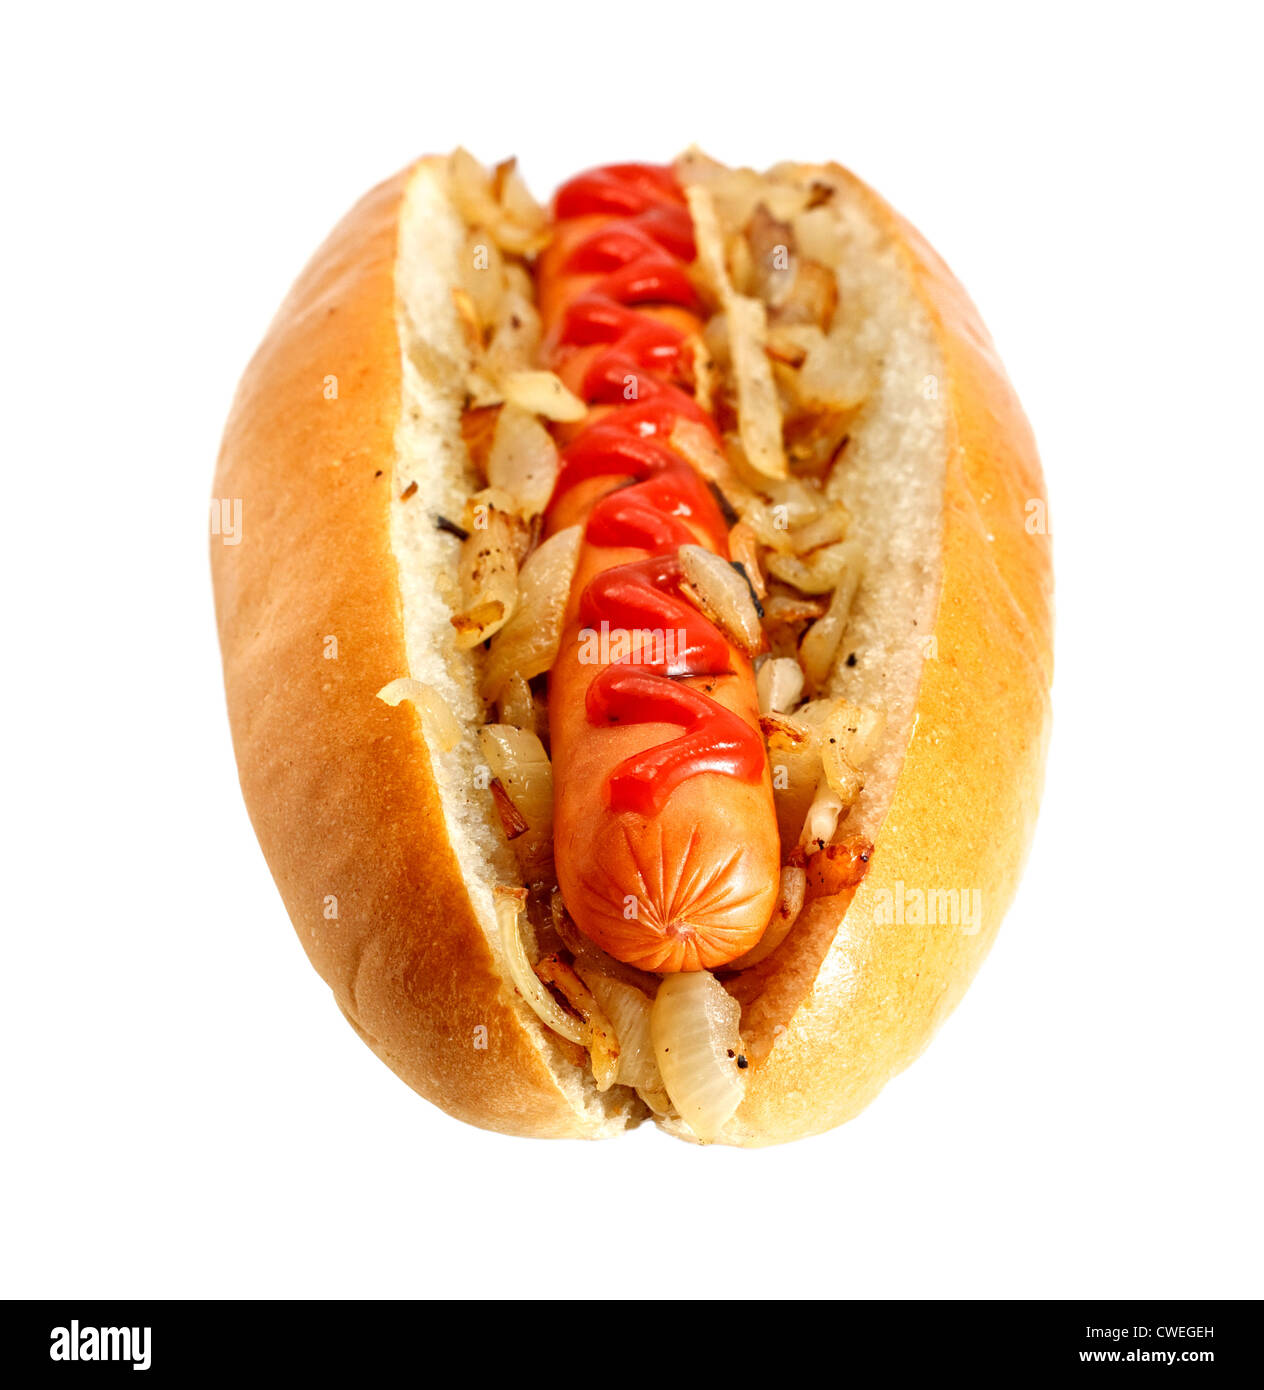 Gegrillte Würstchen oder Wiener mit gebratenen Zwiebeln und Ketchup-topping, die ultimative klassische Fast food Stockfoto